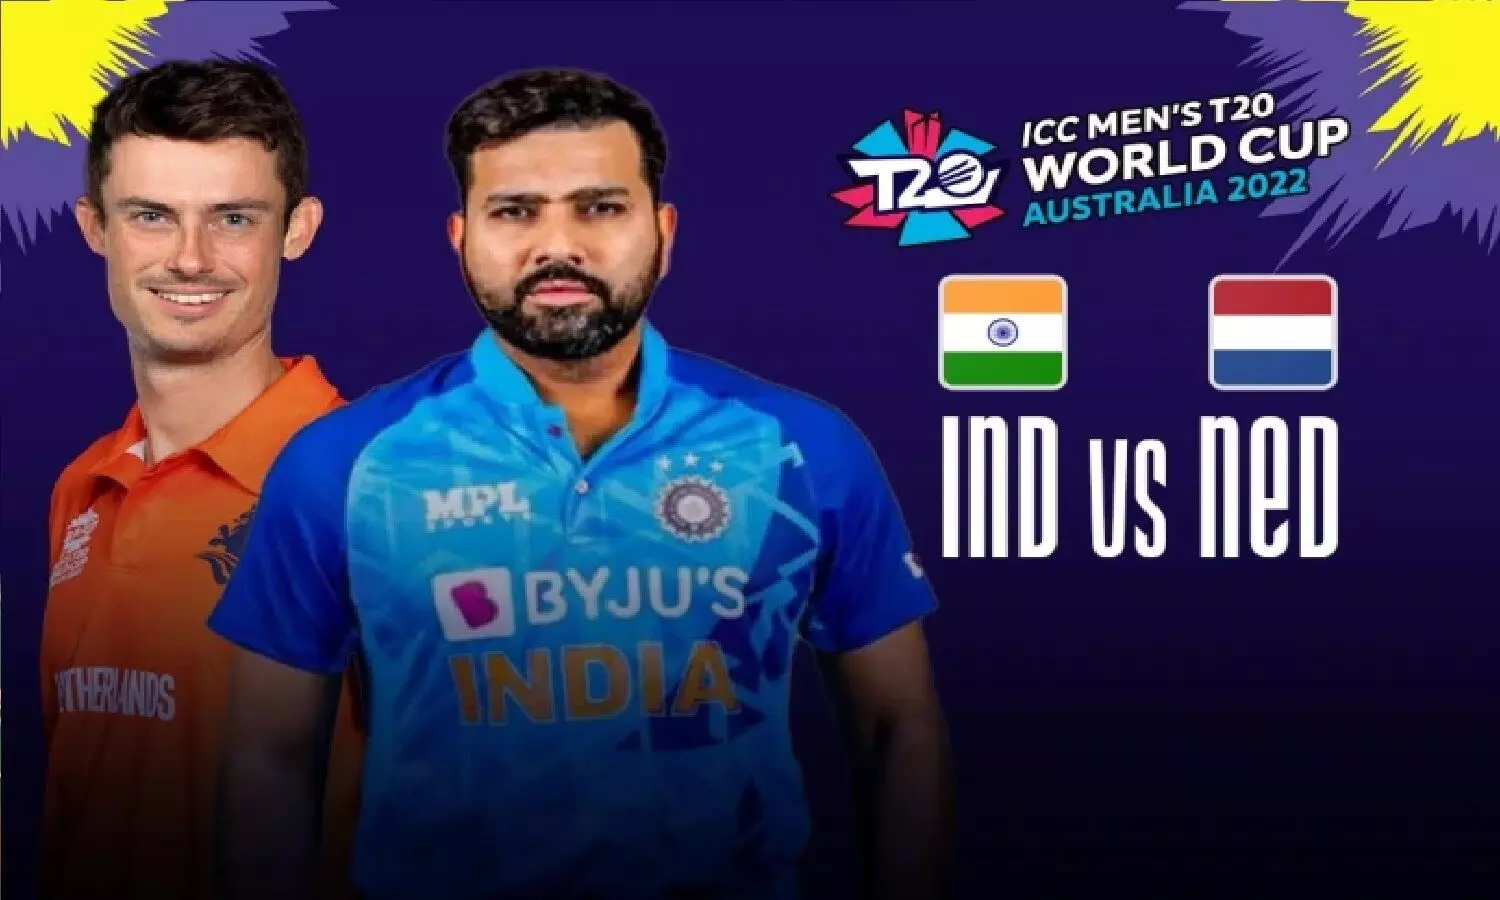 India Vs Netherlands Match: टी20 वर्ल्ड कप का 23वां मैच इंडिया Vs नीदरलैंड्स, देखें प्लेइंग 11